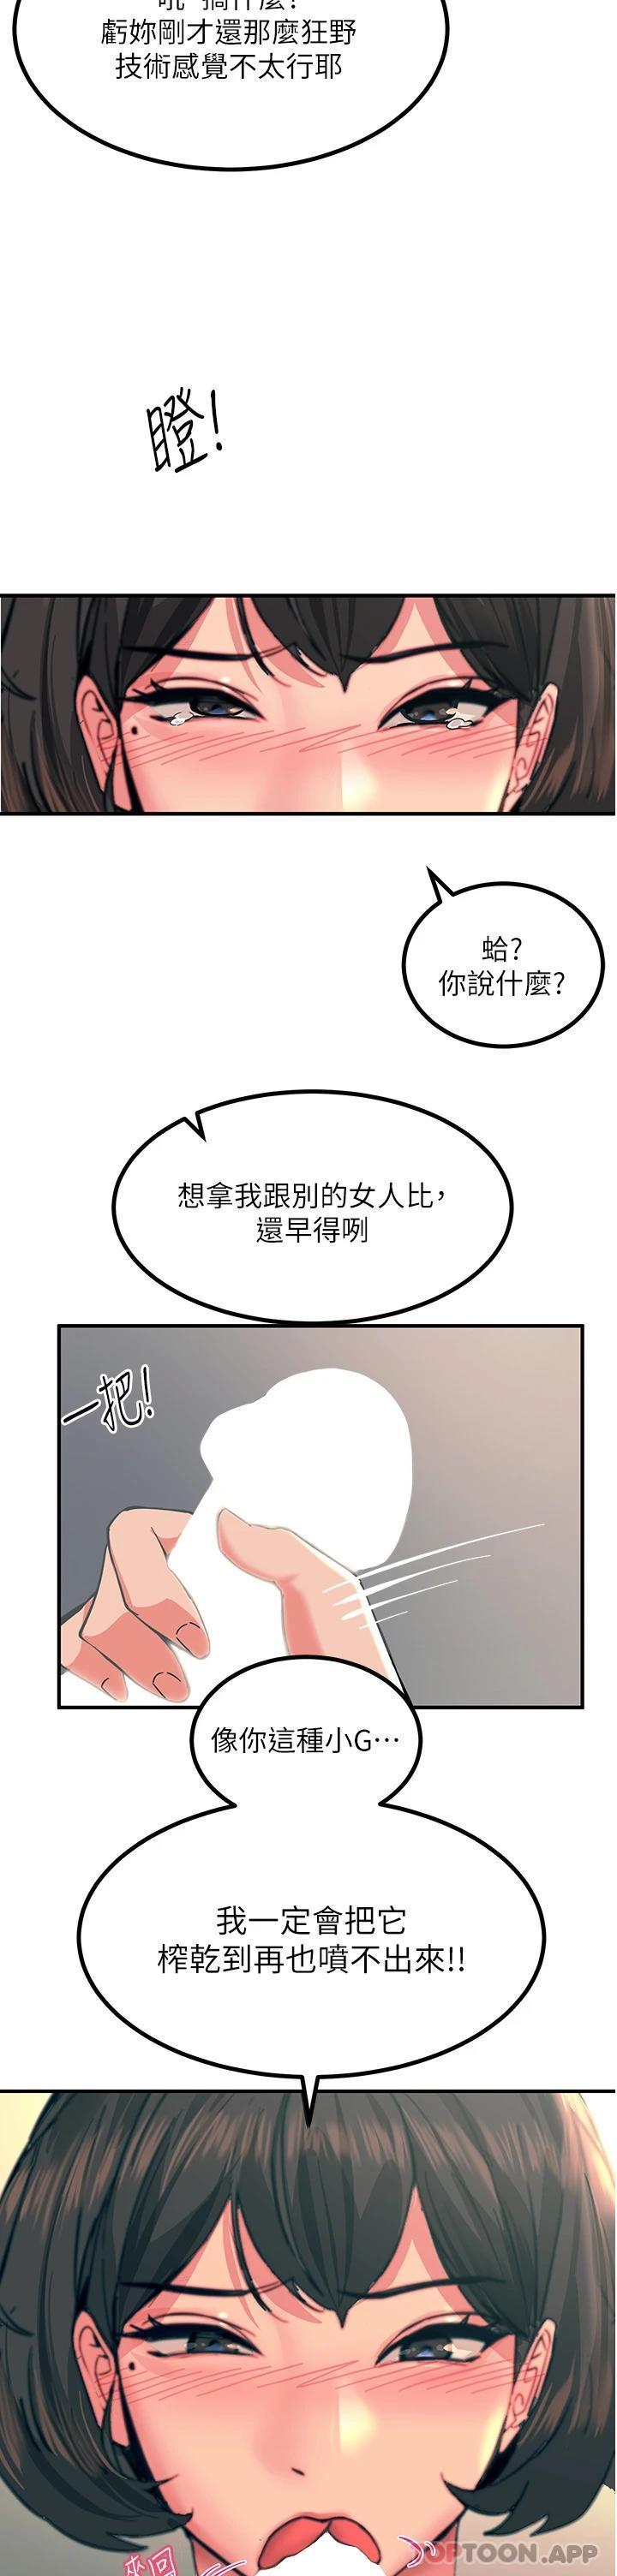 韩国污漫画 觸電大師 第36话-放不放进去由我决定 24